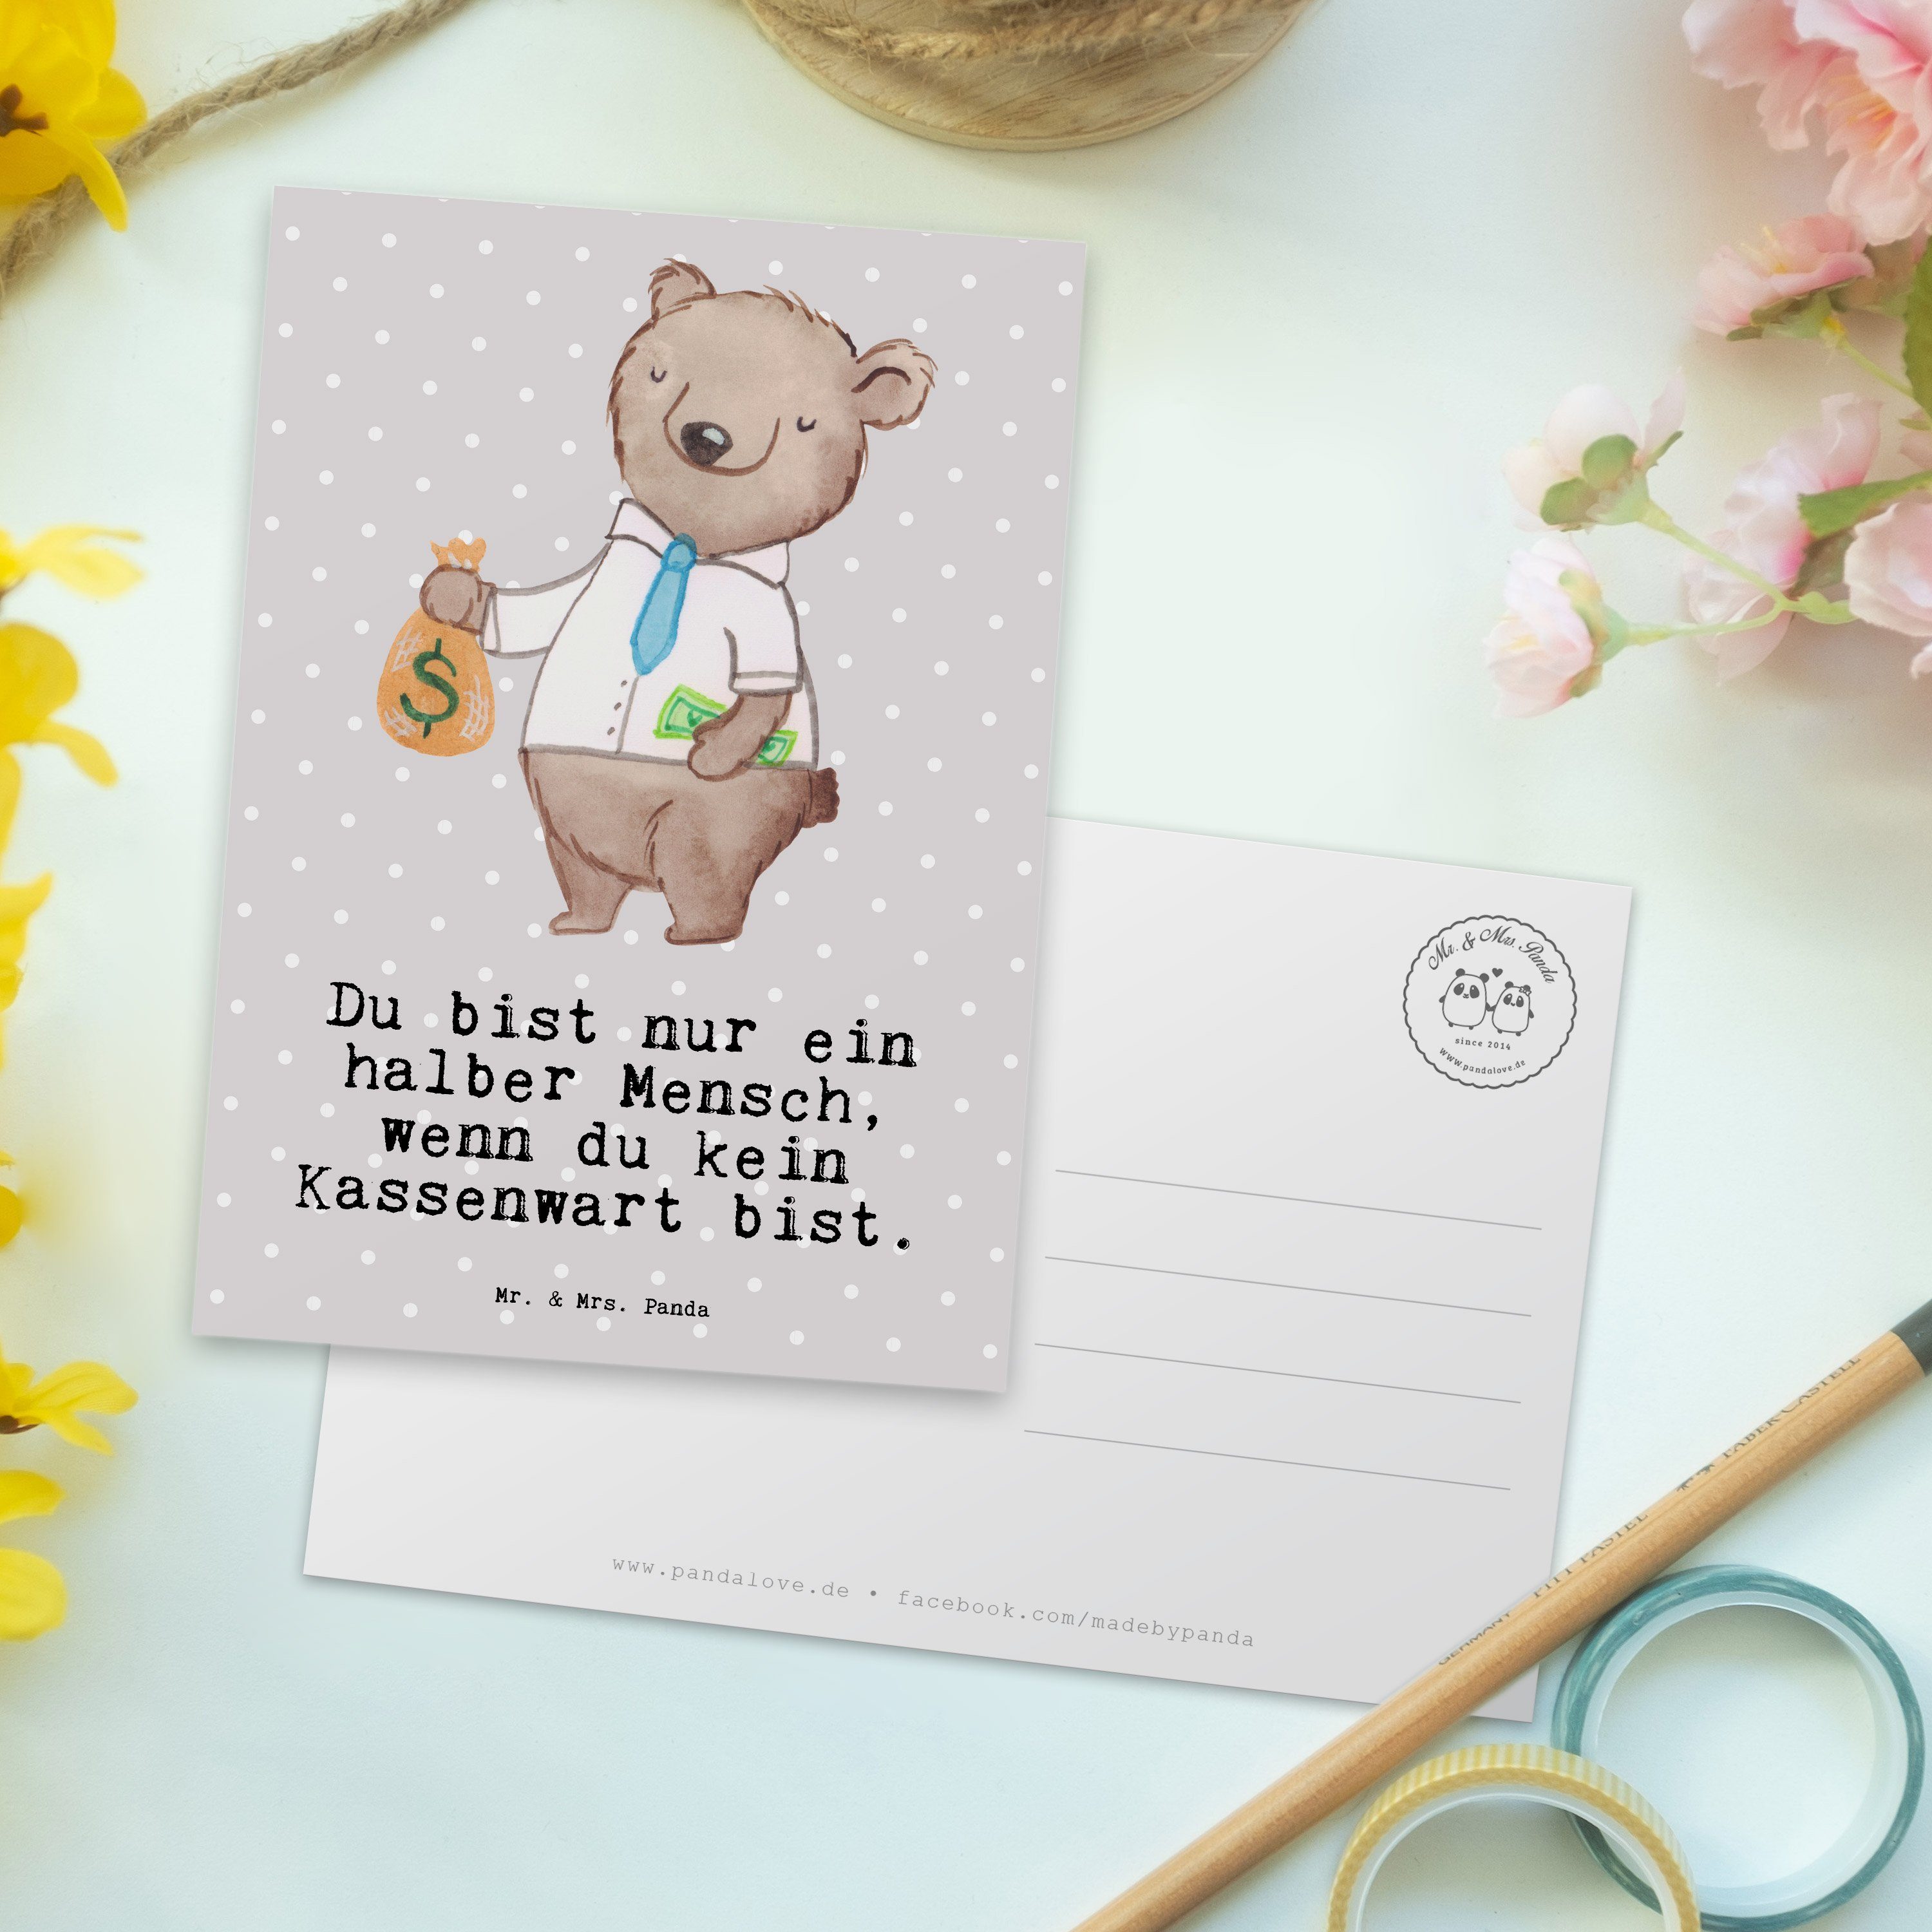 Mr. & Mrs. Panda Postkarte Kassenwart mit Herz - Grau Pastell - Geschenk, Einladung, Schenken, A